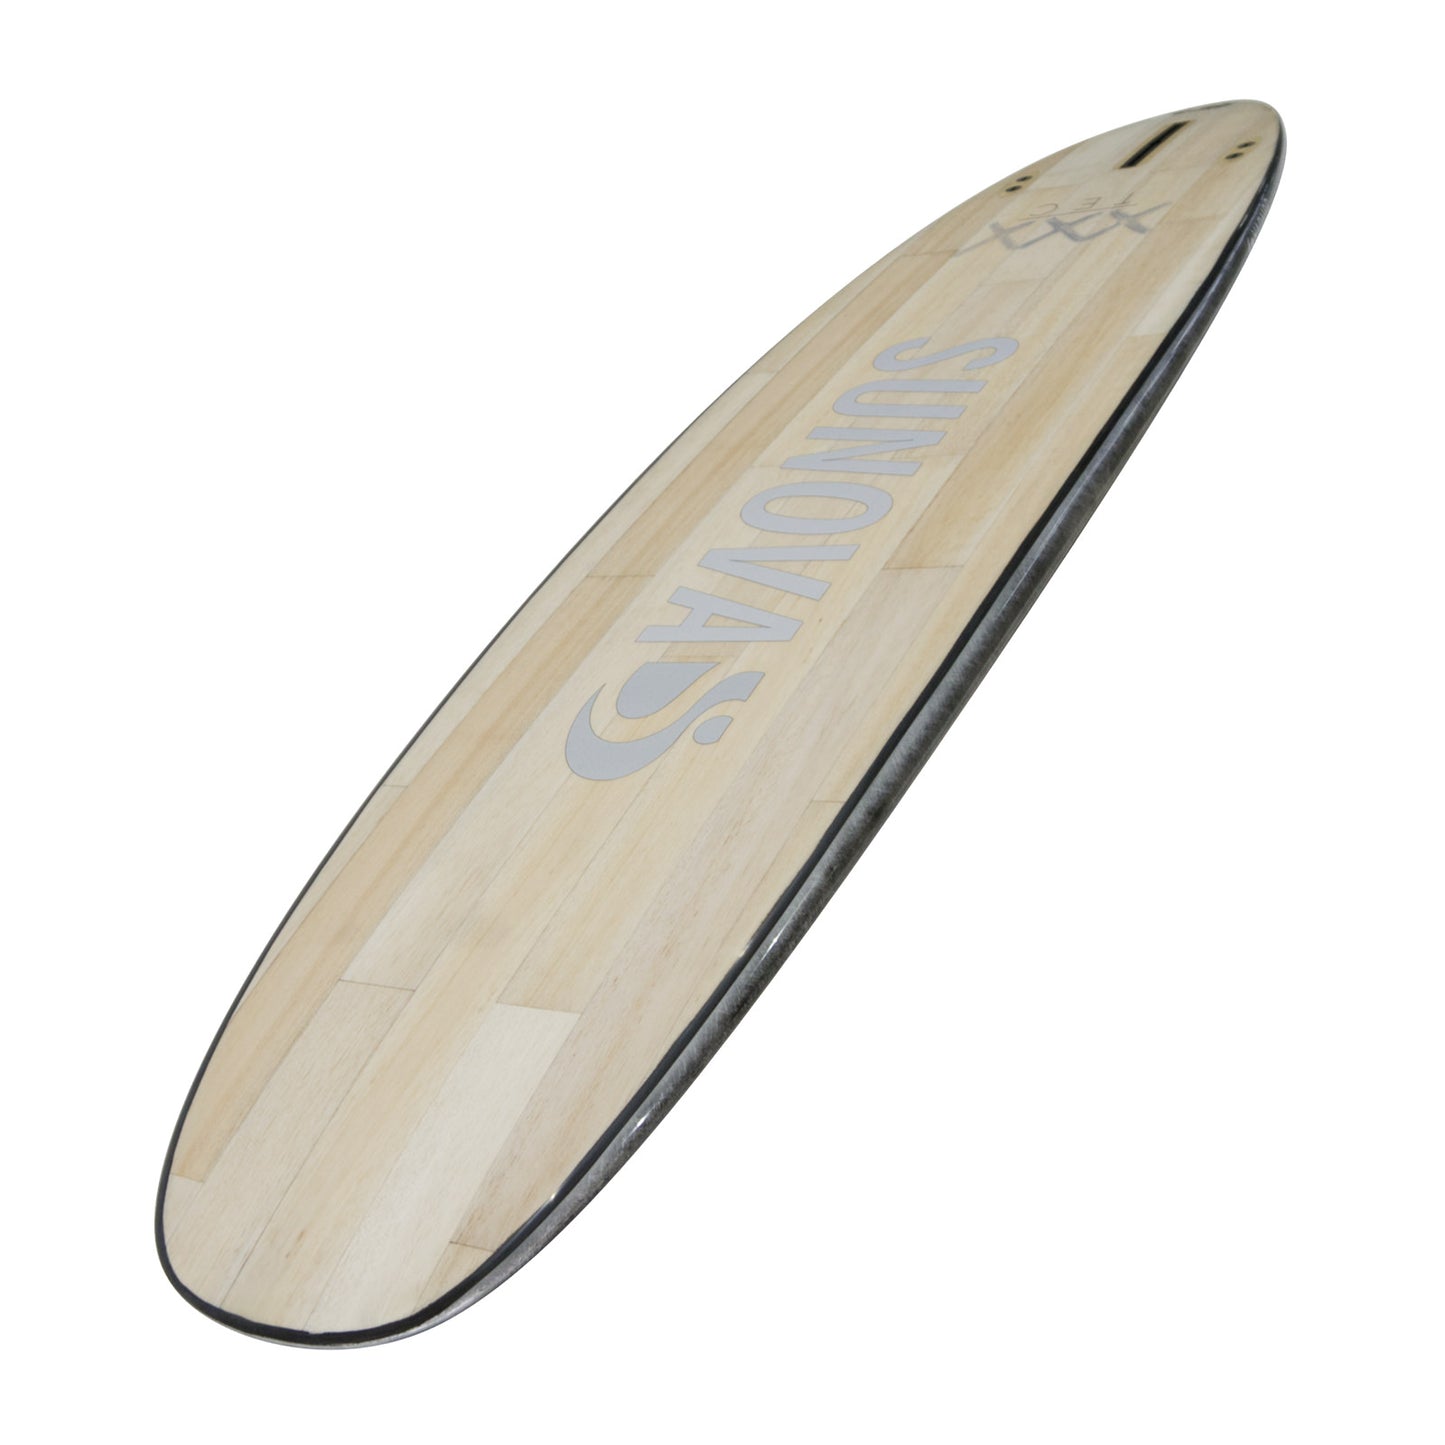 Perspektivische Ansicht der Unterseite des Sunova Style Wave SUP Board in der XXX Bauweise.